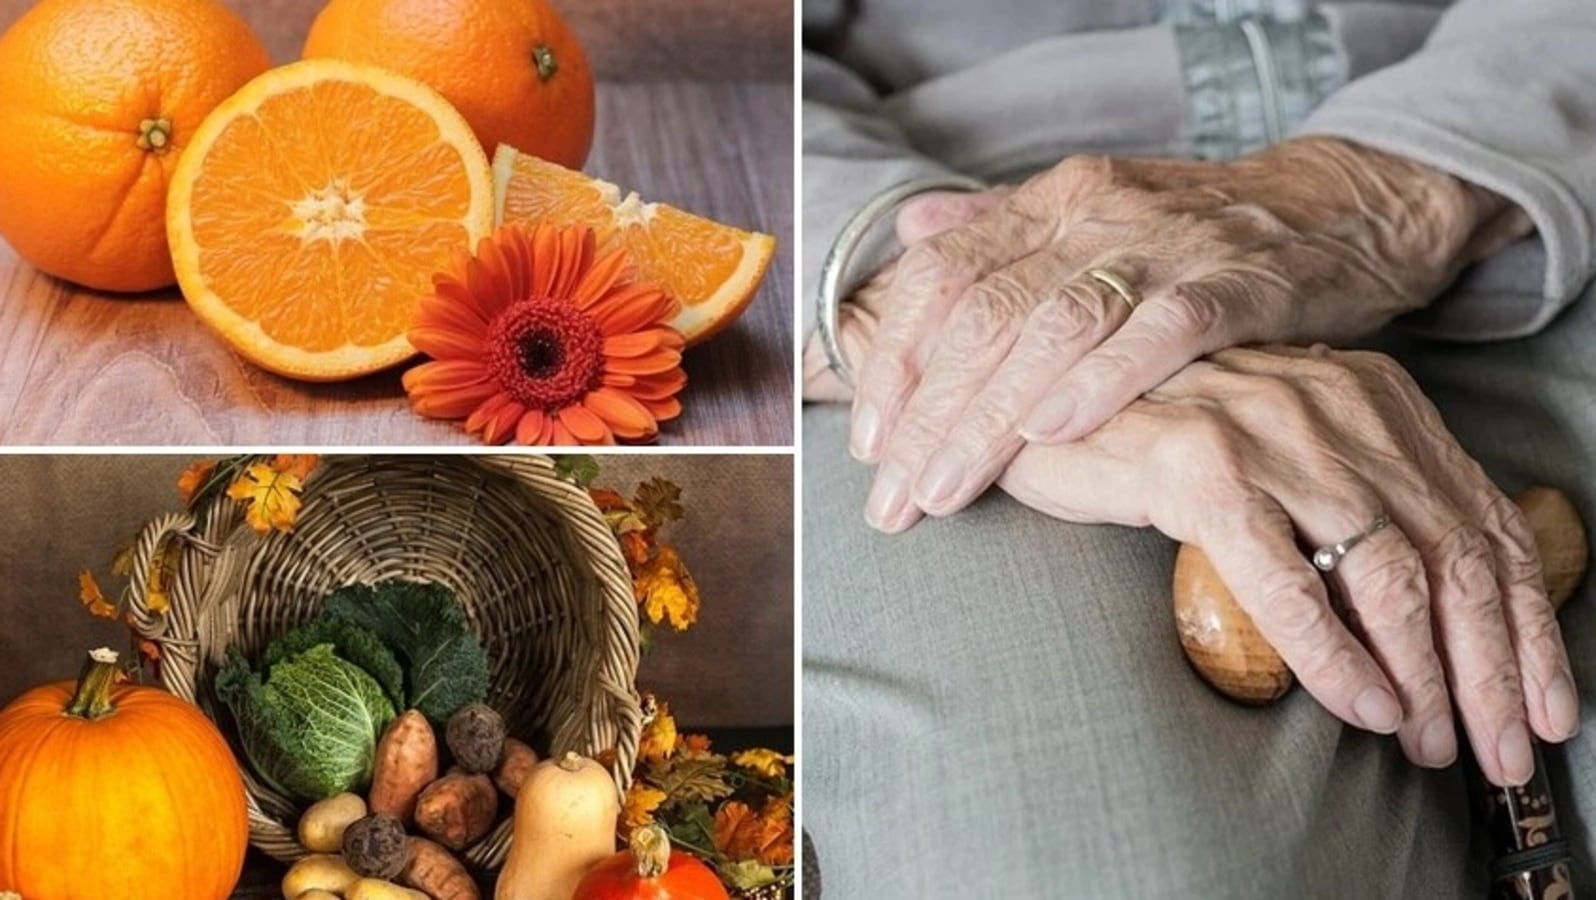 Día Mundial de la Enfermedad de Parkinson 2022: Alimentos para prevenir o controlar la enfermedad |  salud